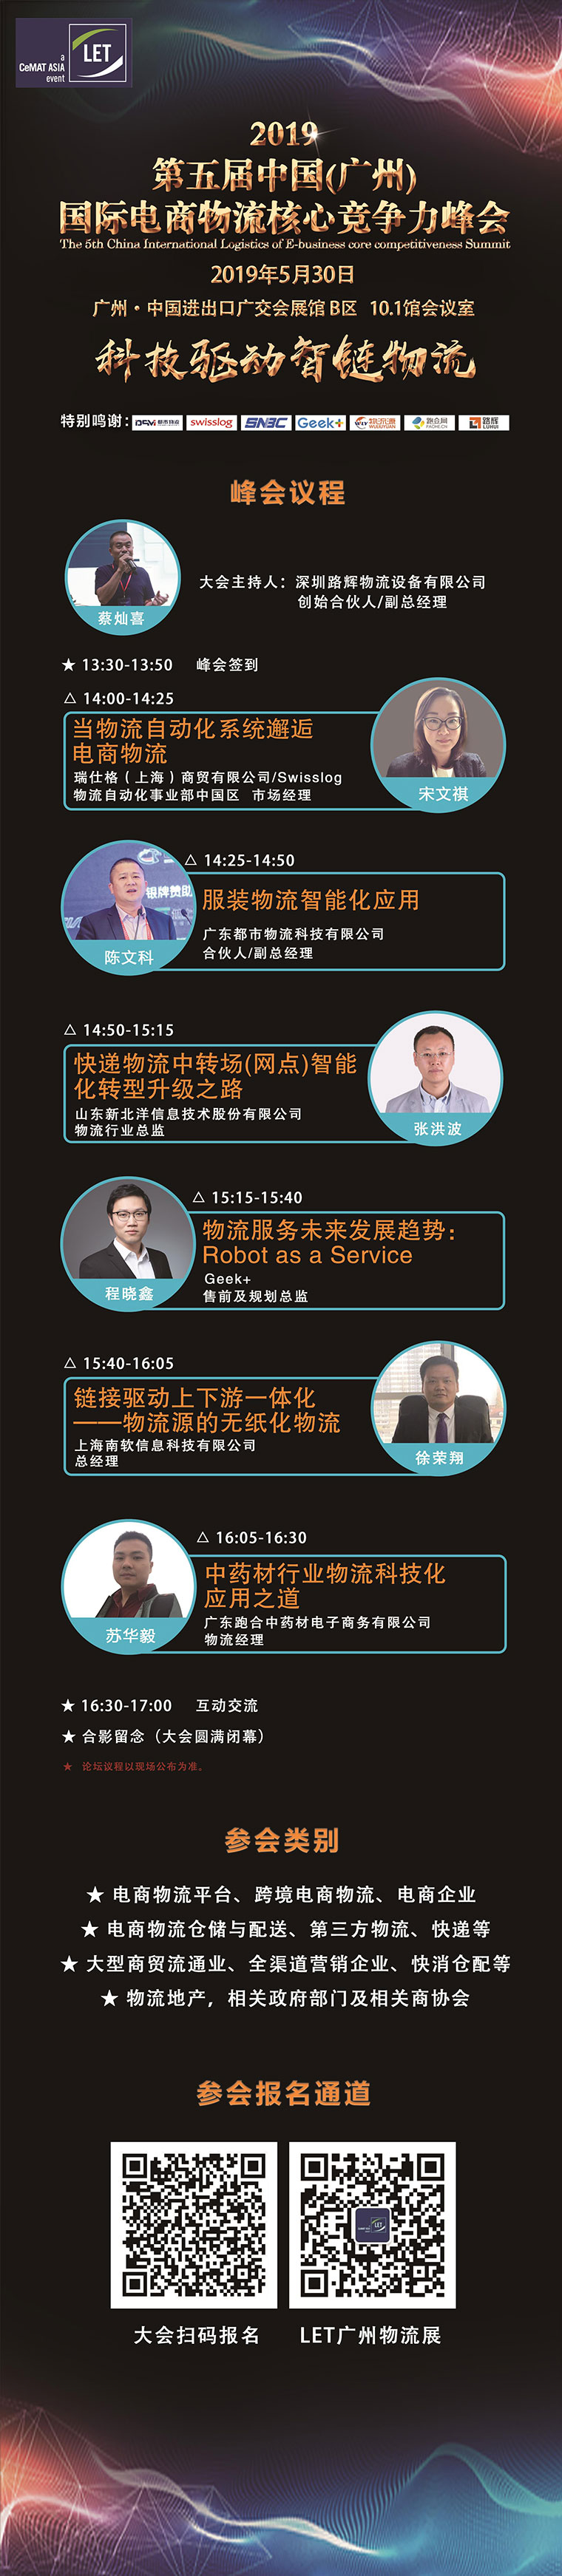 广州电商物流核心竞争力峰会流程海报